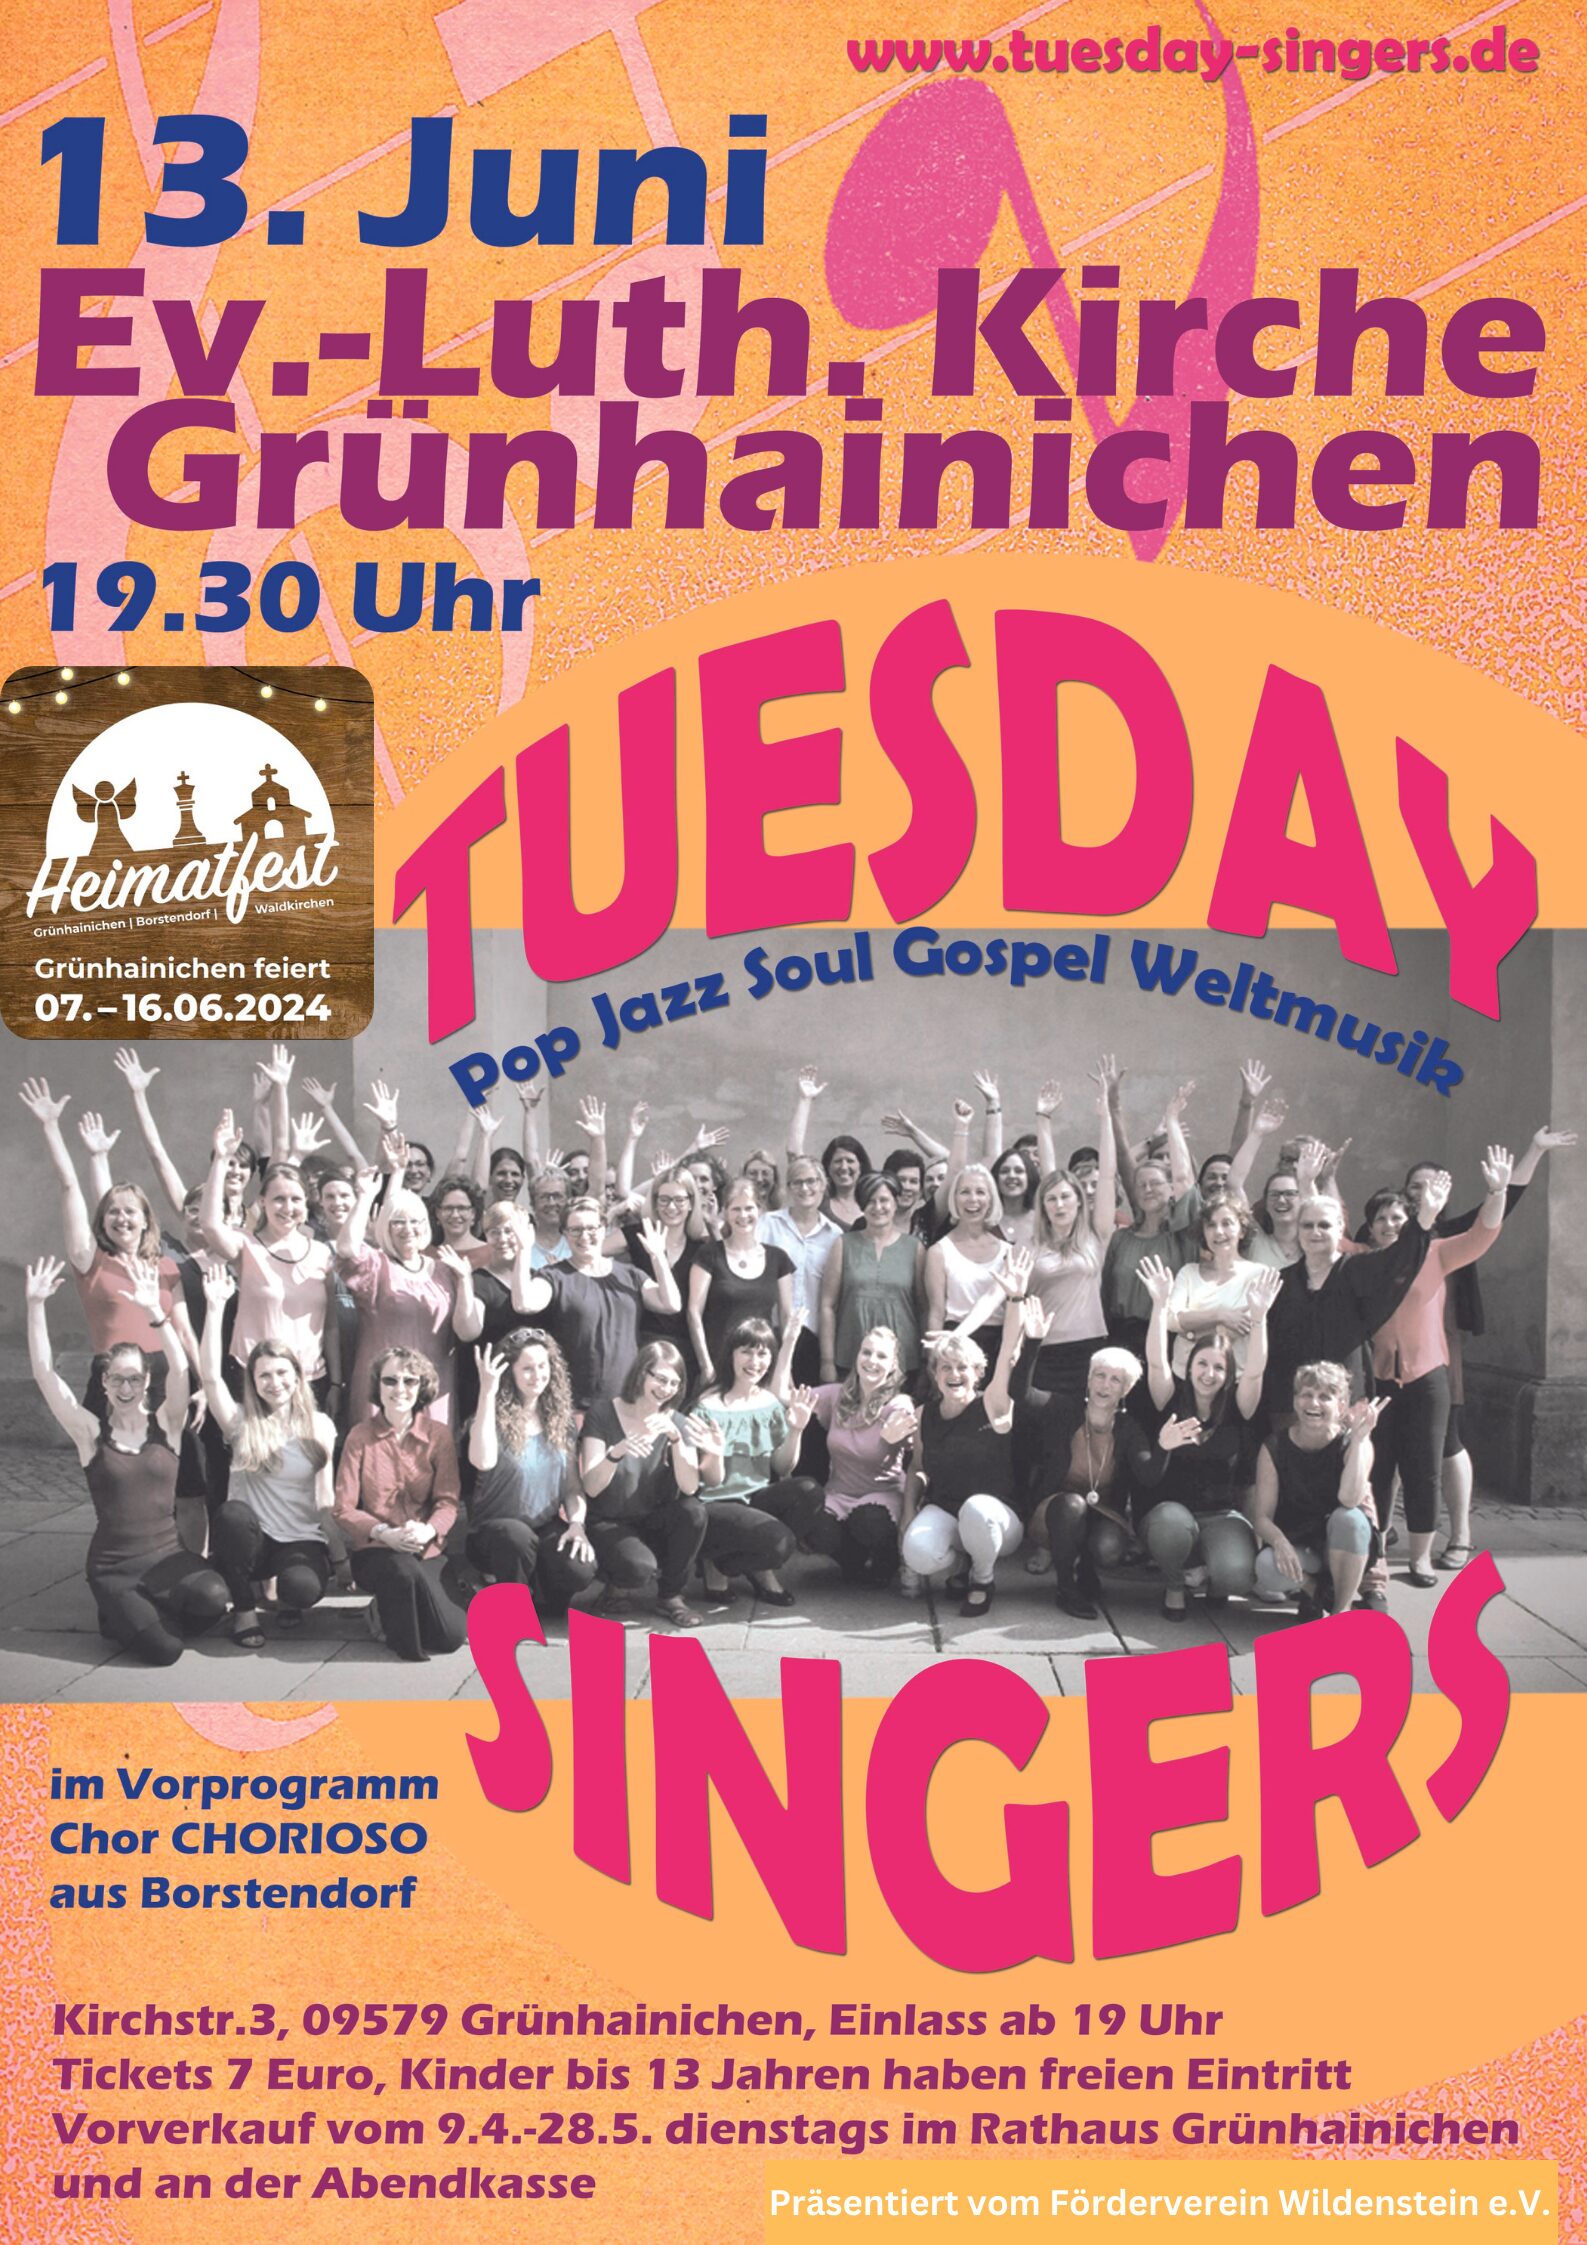 HEIMATFEST - Konzert der "Tuesday Singers" in Grünhainichen am 13.06.2024